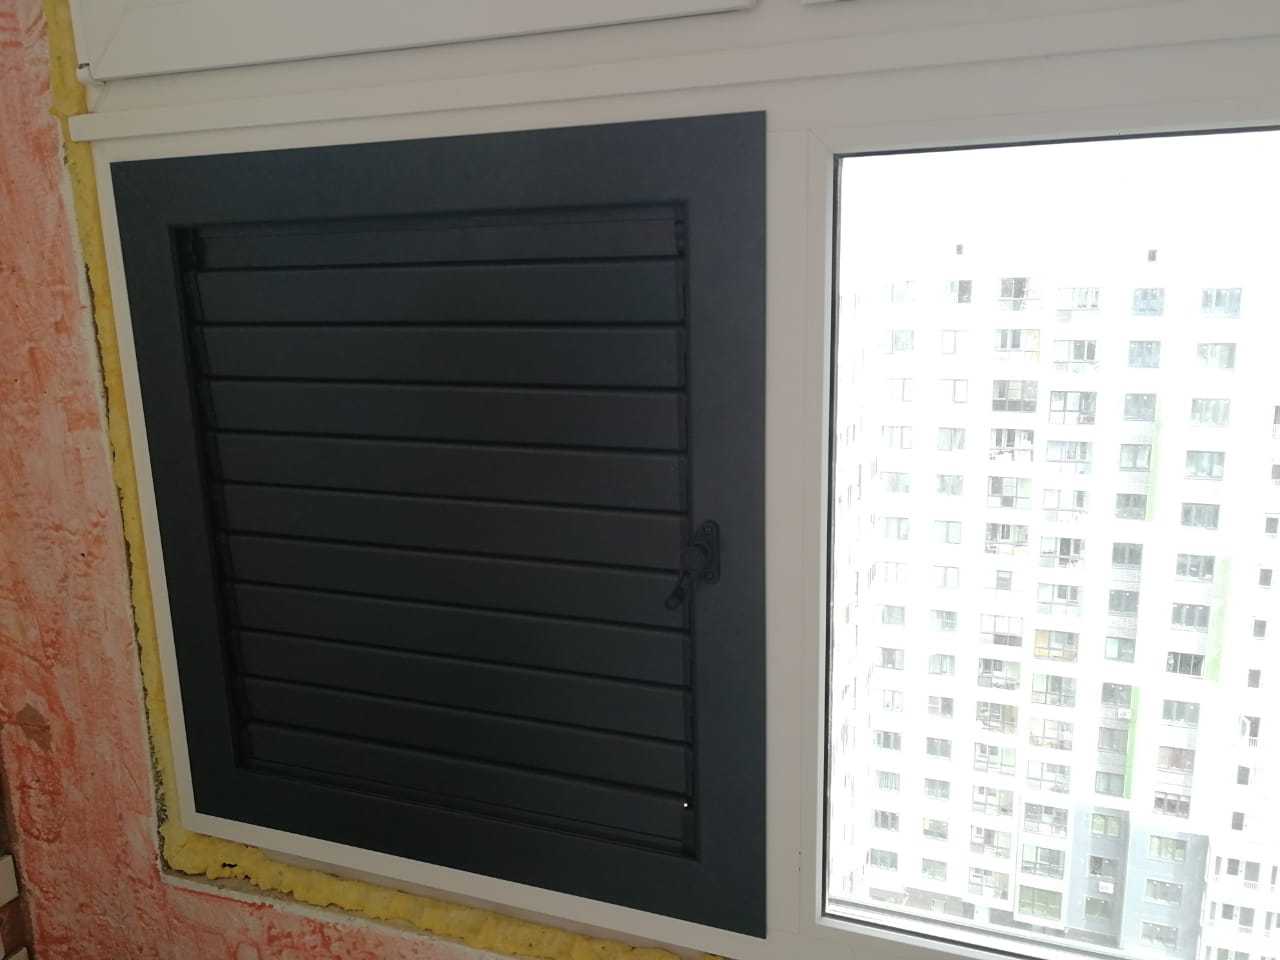 Вентиляционная решетка на балкон с регулировкой жалюзи и герметичным закрытием. Обеспечивает вентиляцию на балконе и достаточное охлаждение внешнего блока кондиционера.